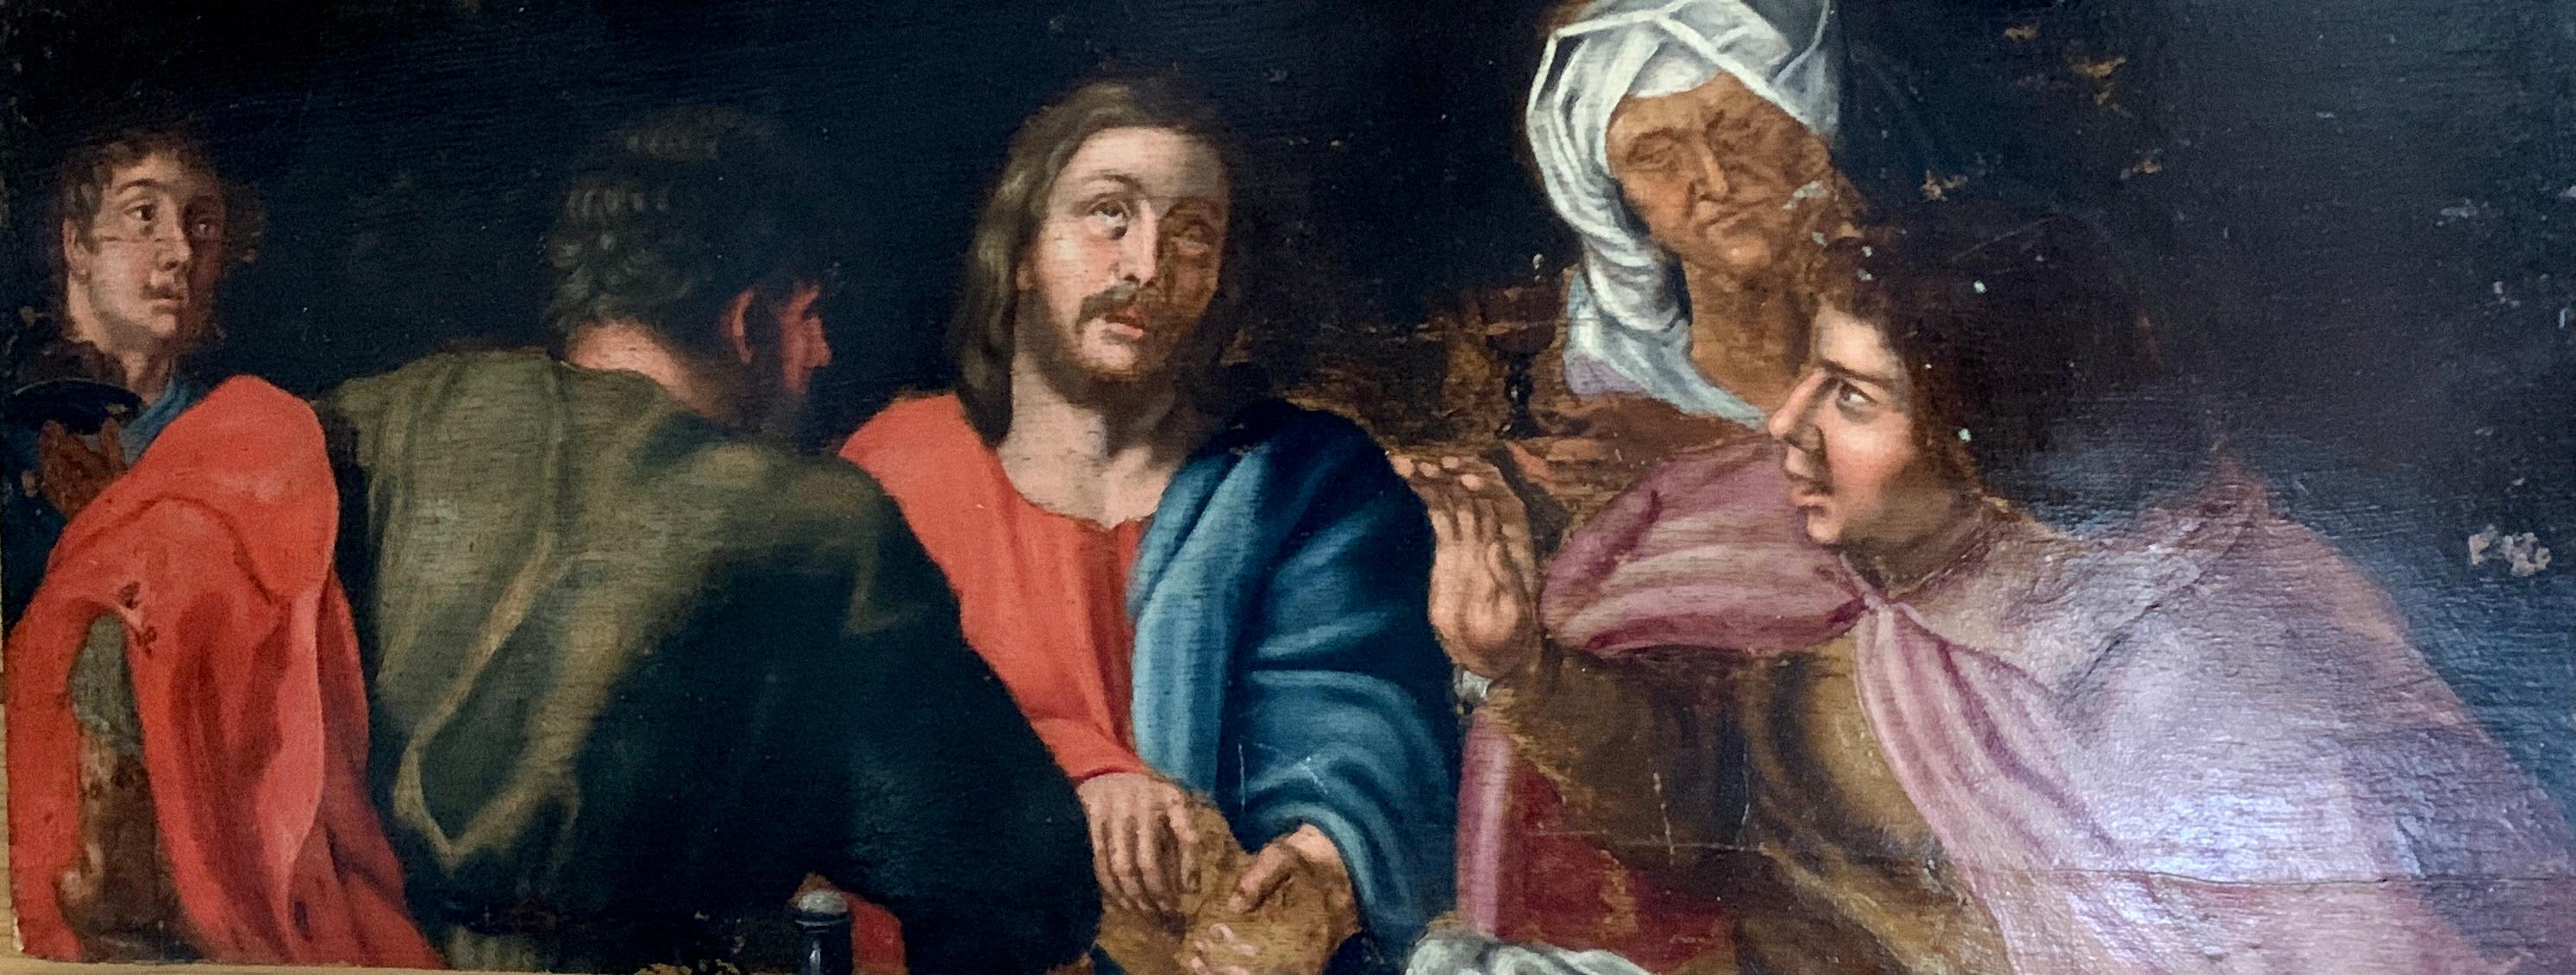 Europäisches Ölgemälde des 17. Jahrhunderts, Christus und seine Jüngeren sitzen um einen Tisch.